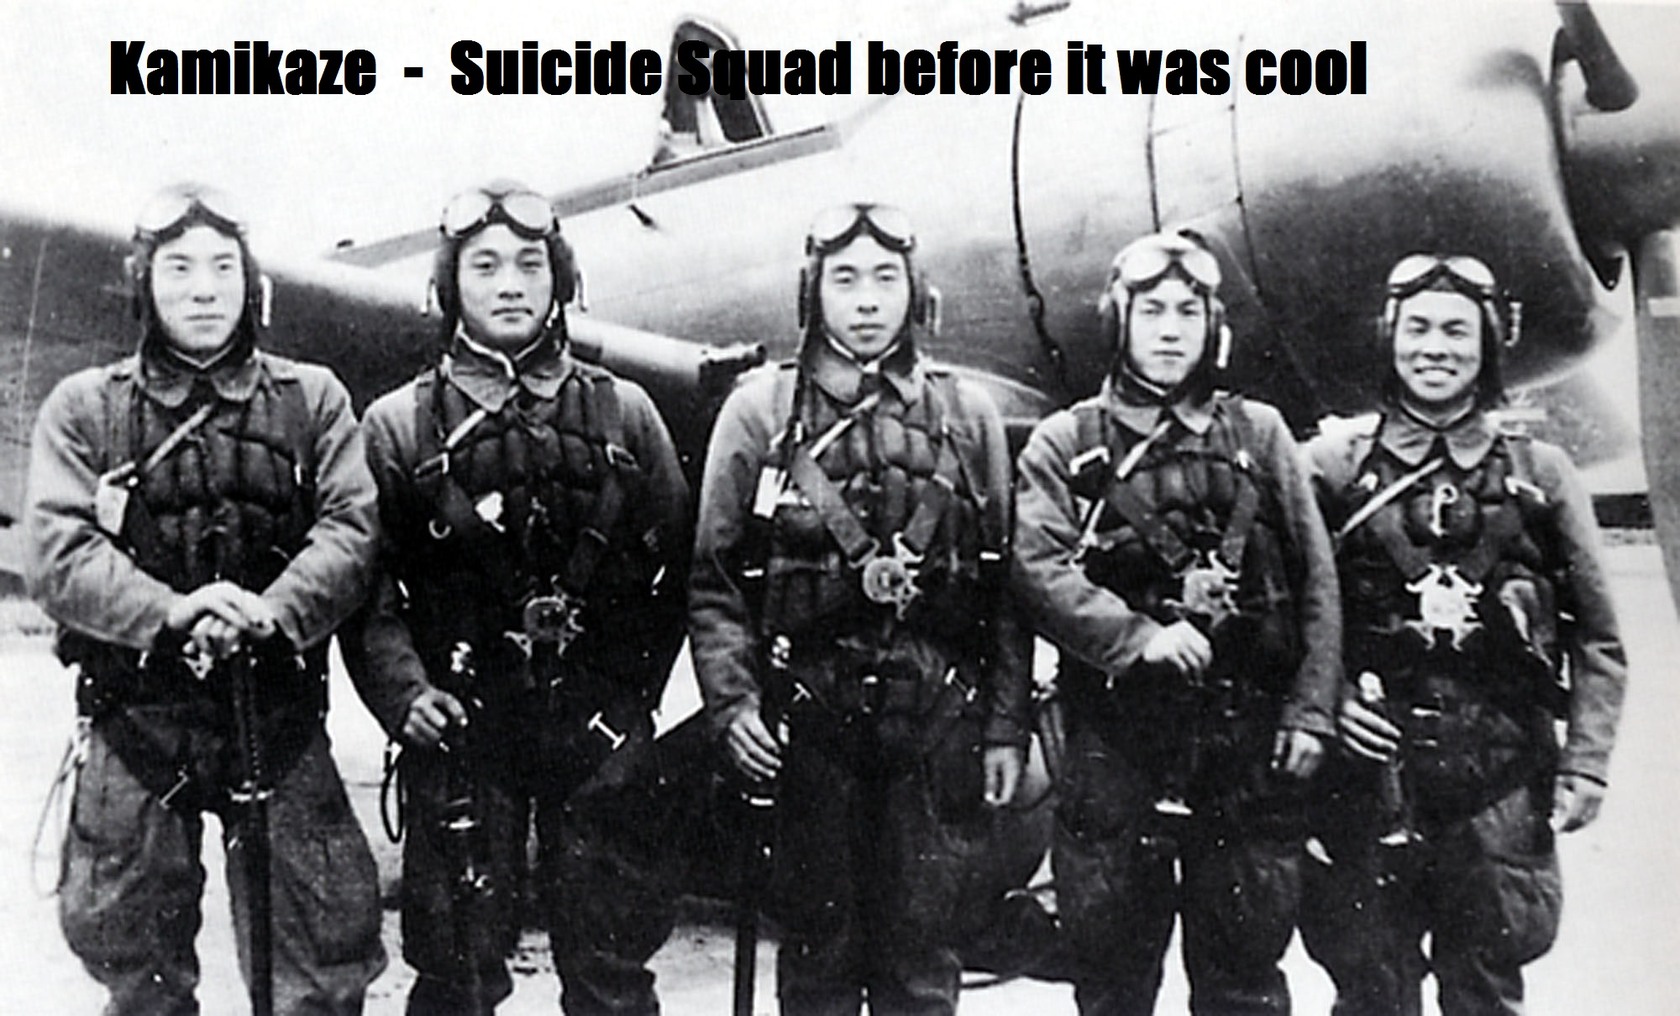 Real suicide squad - meme